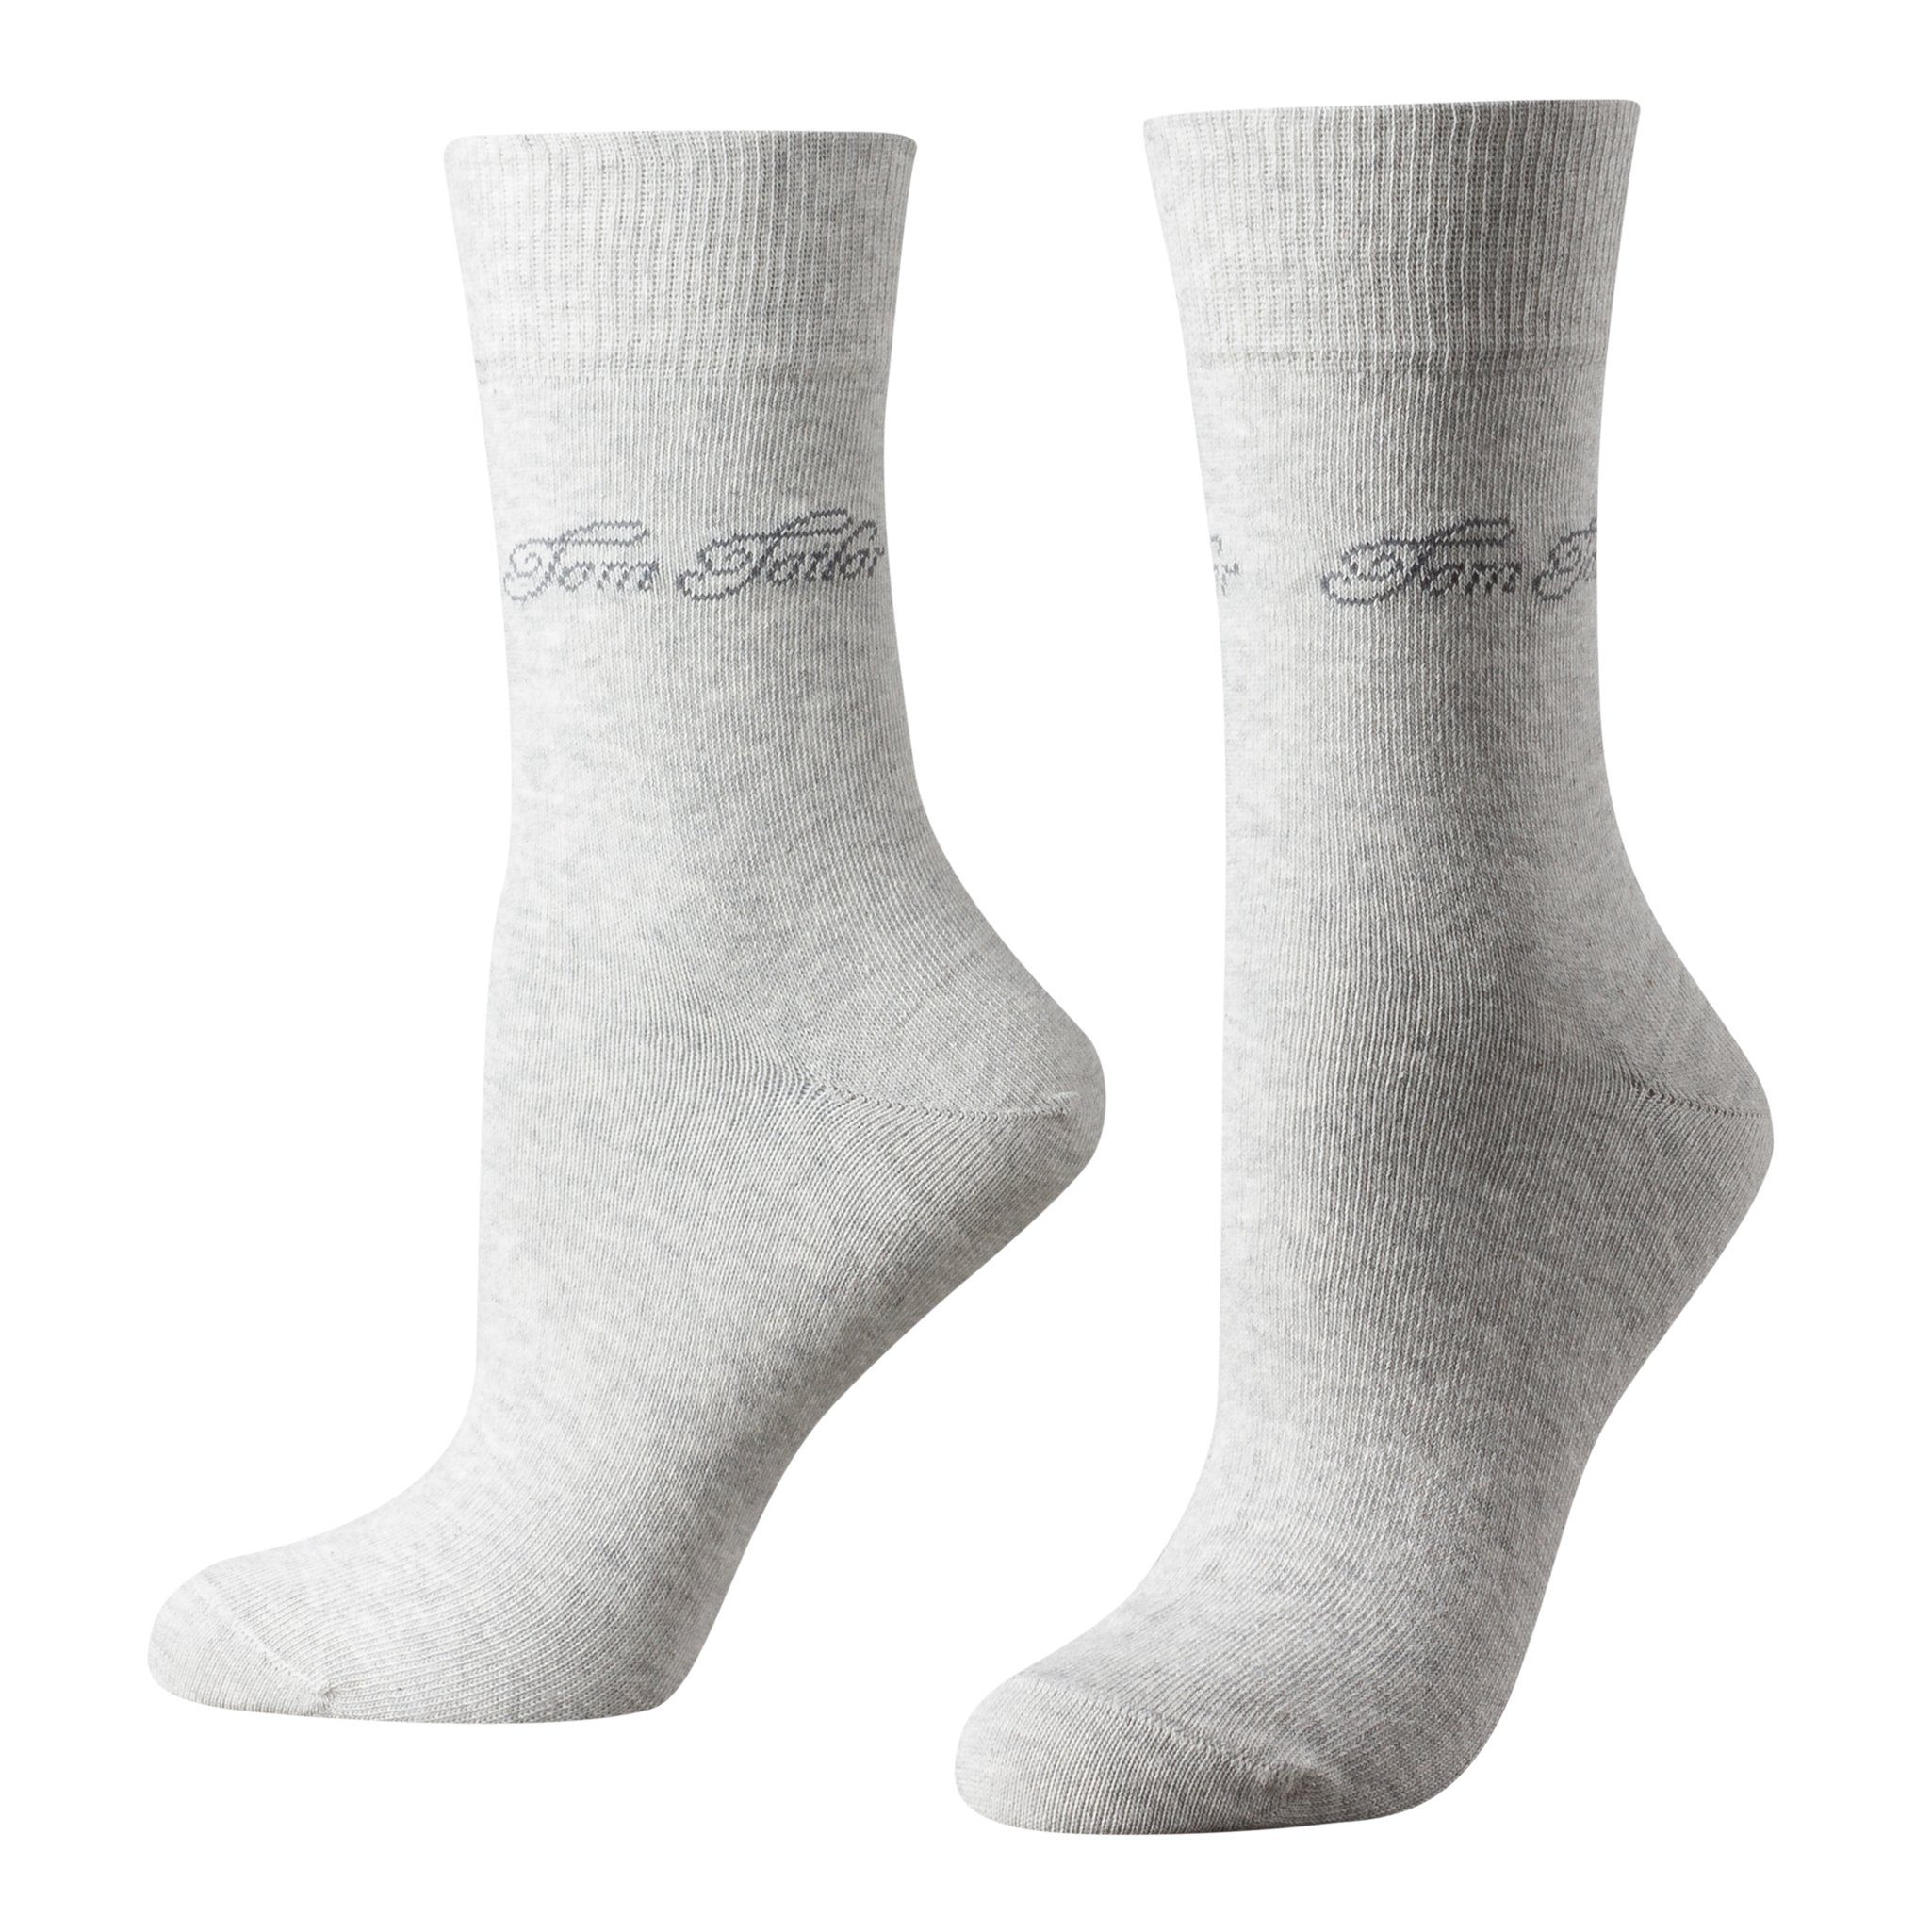 TOM TAILOR Socken 9702285042 Tom Tailor 2er Pack Basic Women Socks 9702 285  summer grey melange Doppelpack Strümpfe Socken